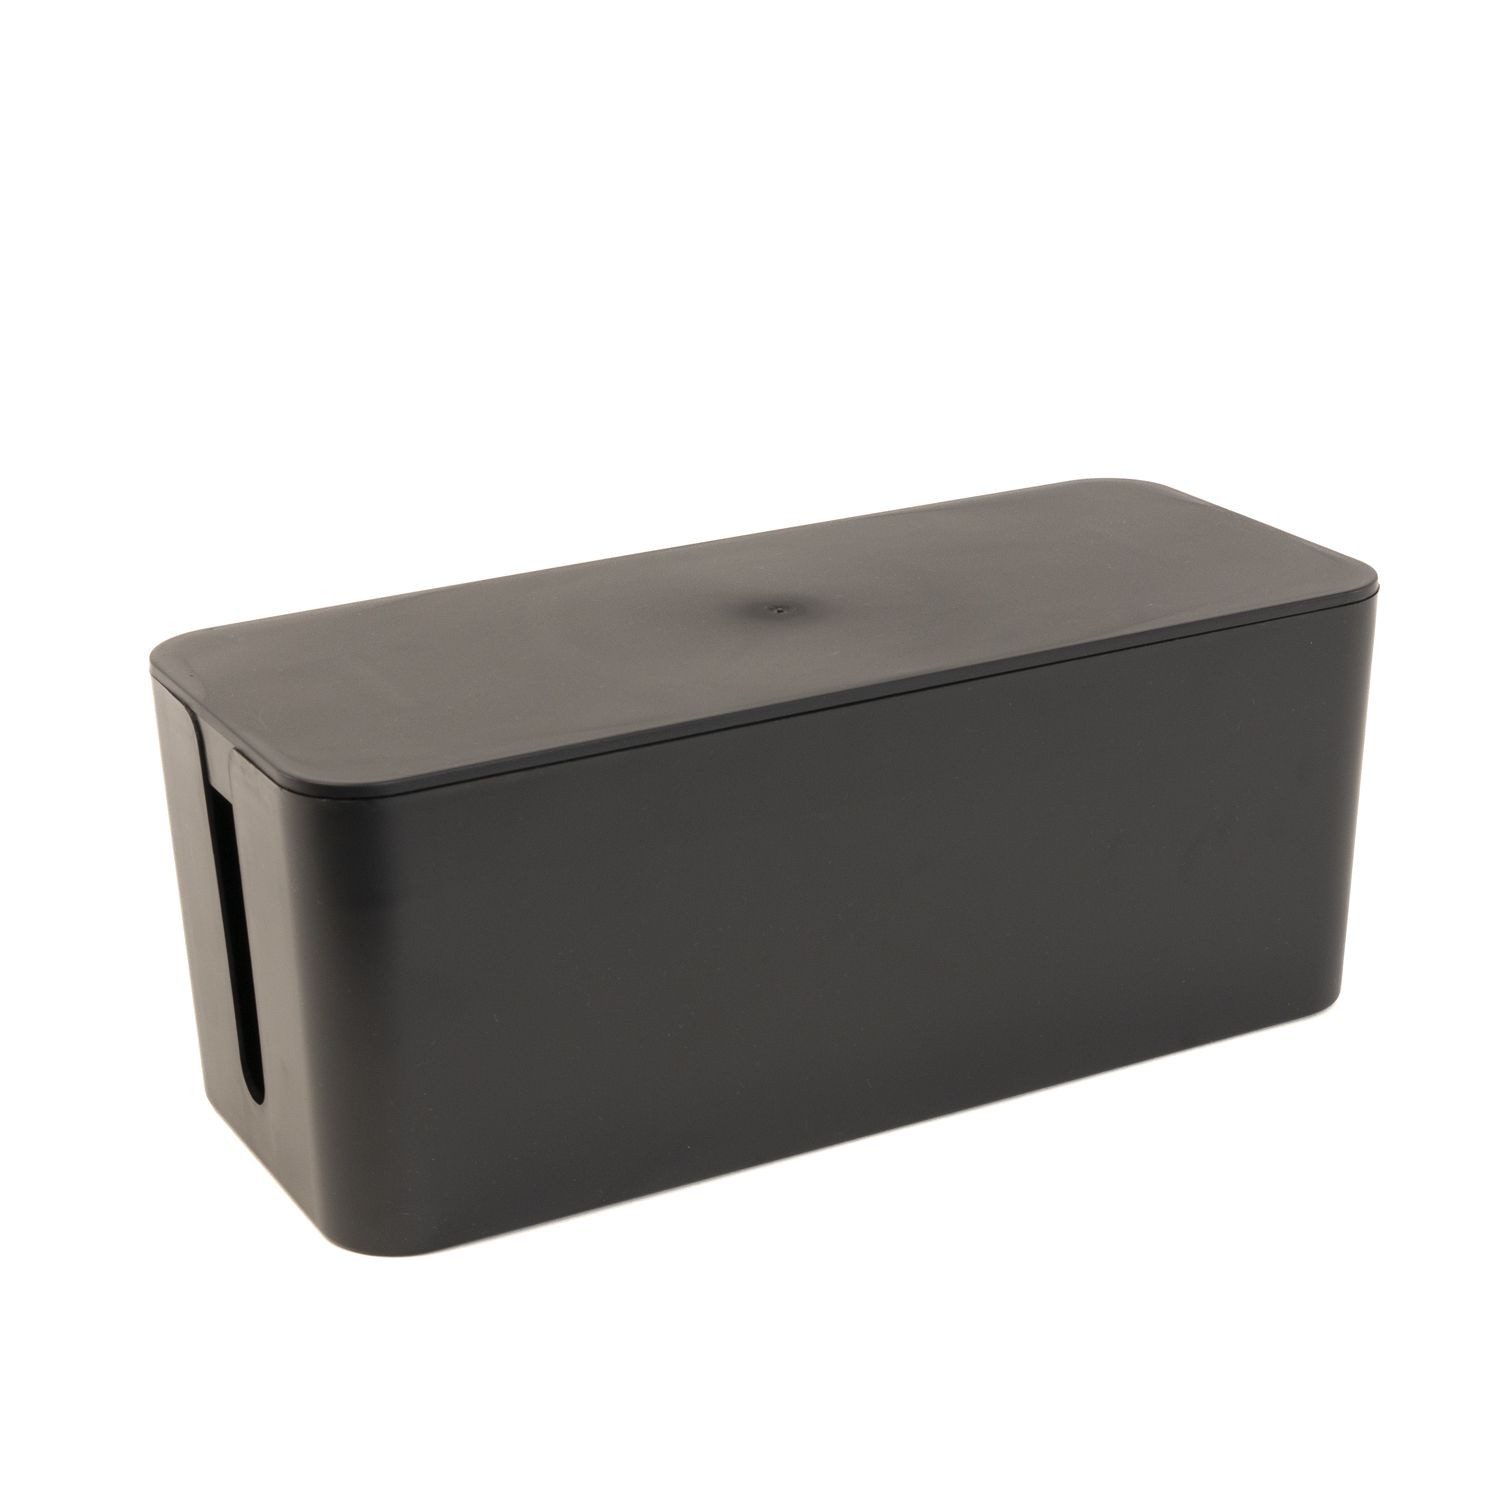 Intirilife Kabelbox, Kabelbox aus Kunststoff in Schwarz - 32.1x13.6x12.7cm